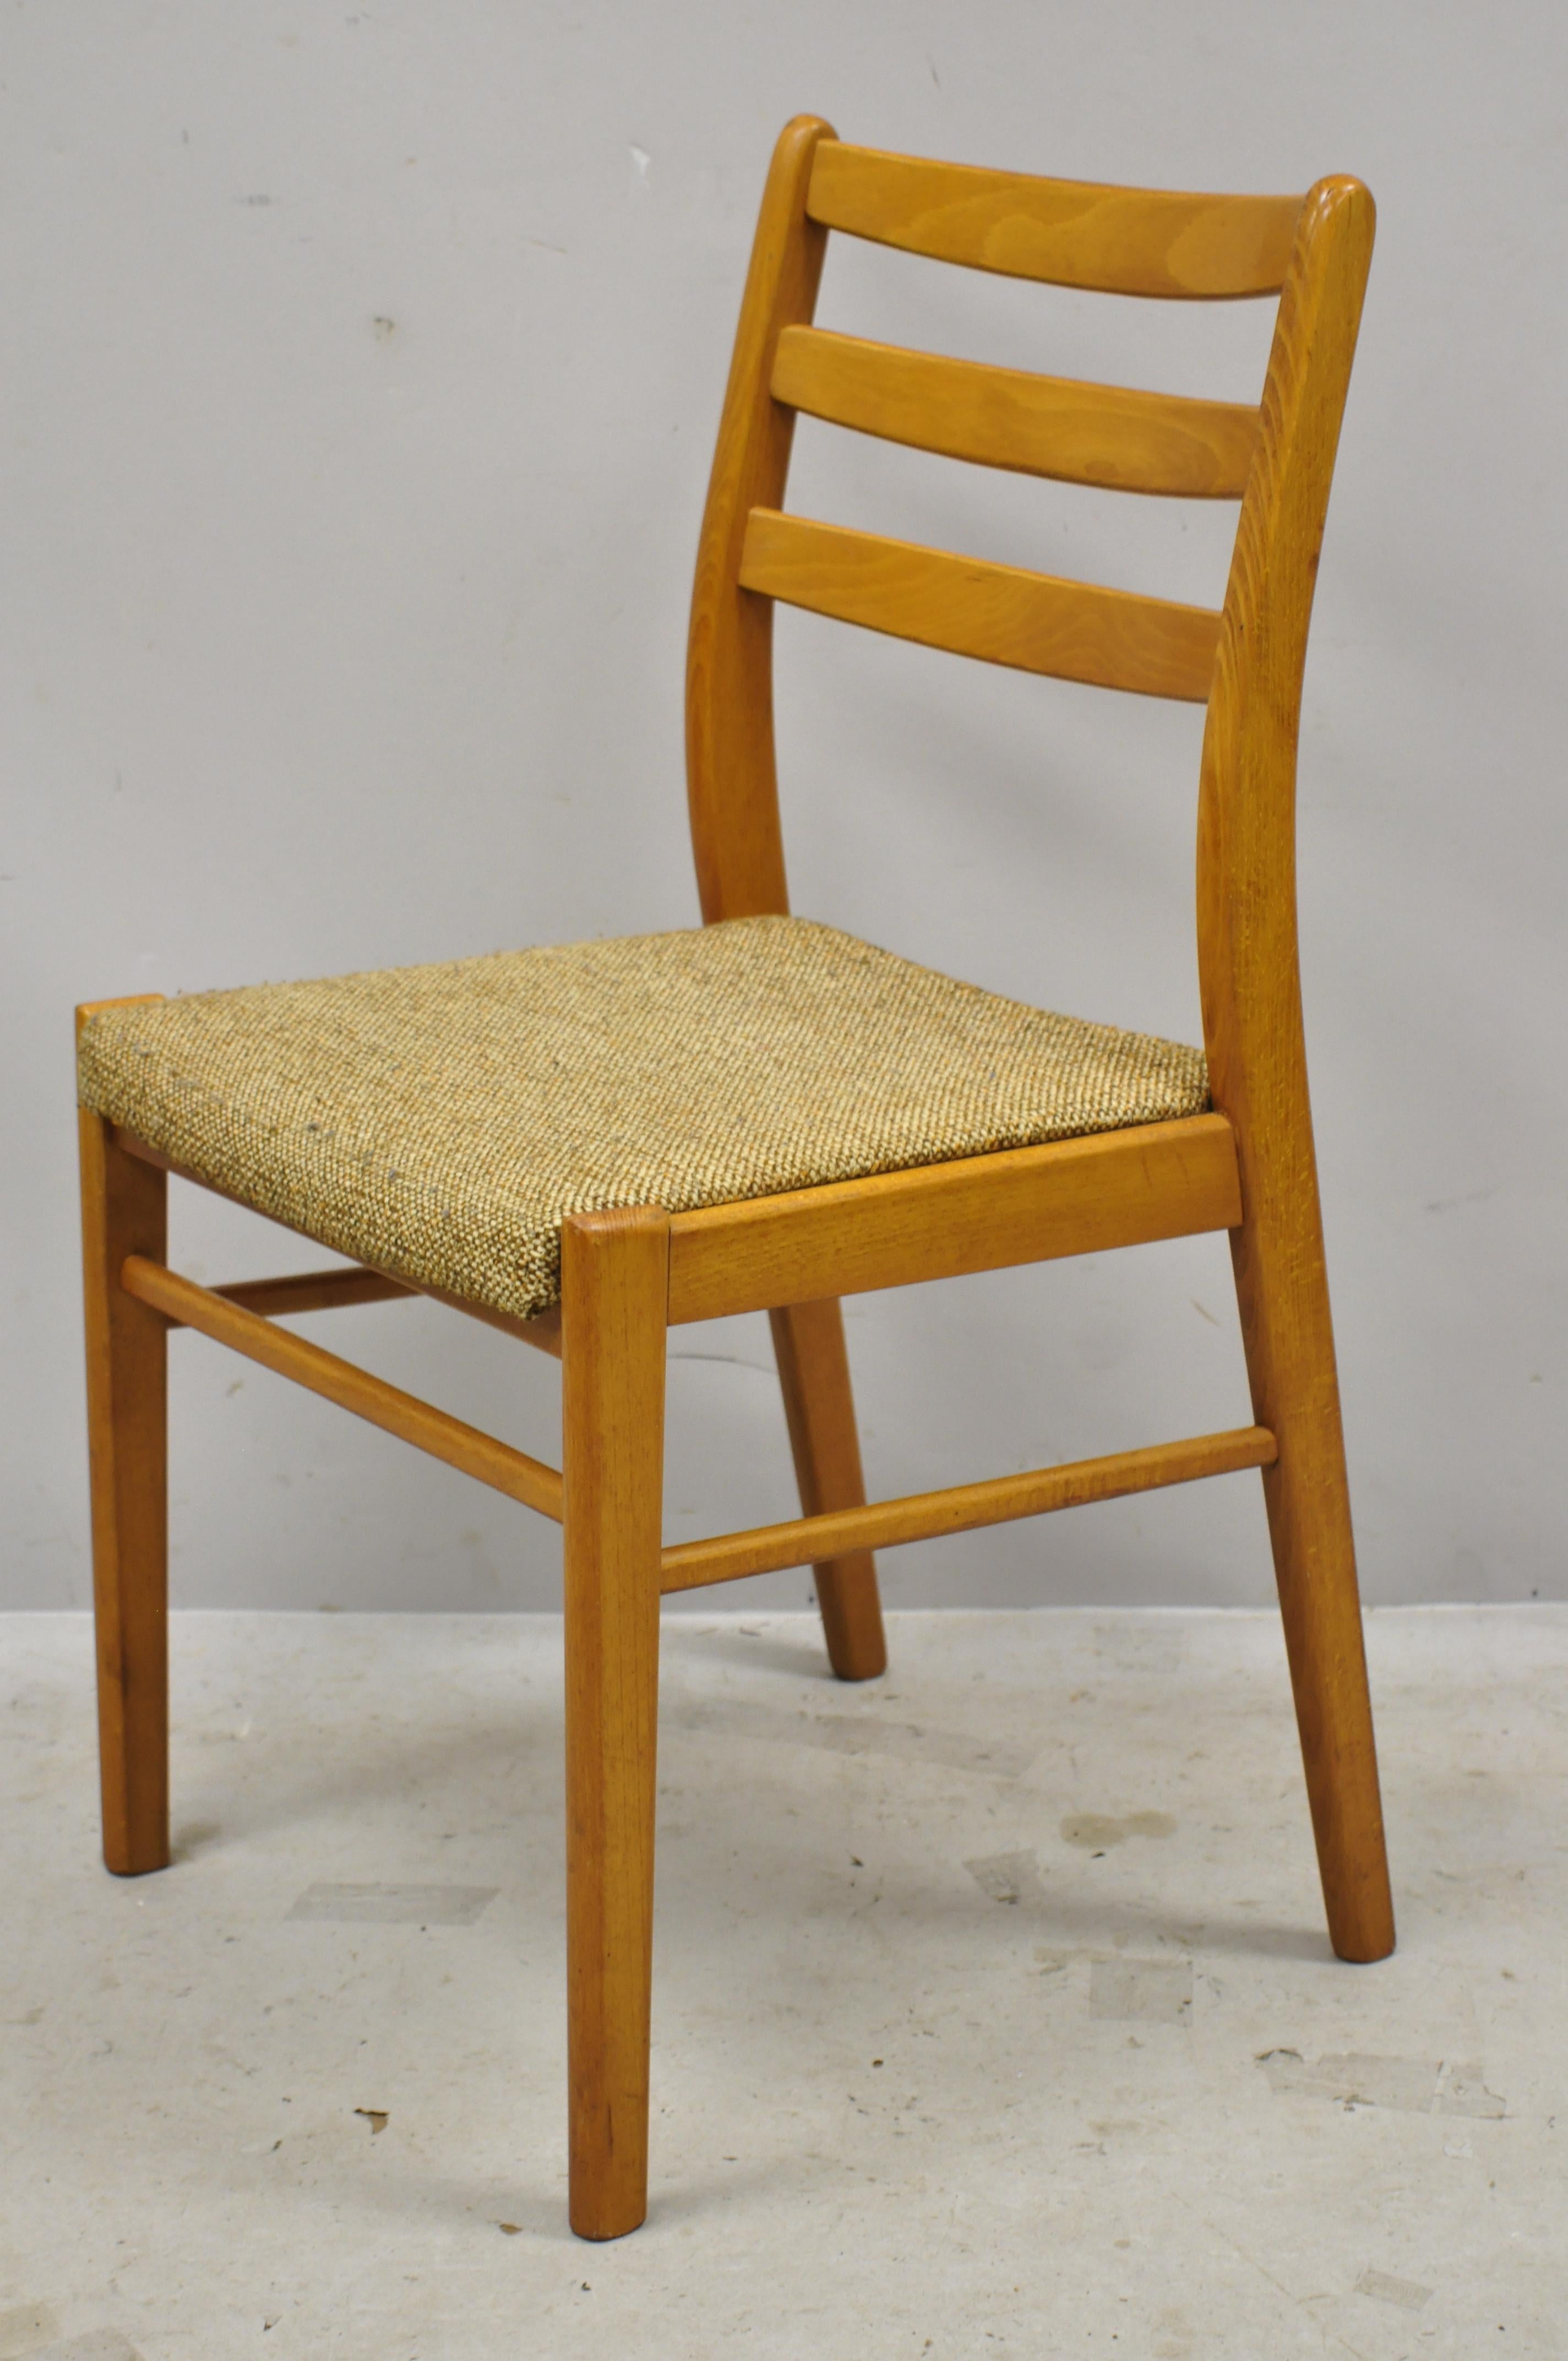 Chaises de salle à manger danoises modernes du milieu du siècle dernier en teck - Lot de 4. L'article comprend (4) chaises latérales, un cadre en bois massif, un beau grain de bois, des lignes modernistes nettes, un artisanat danois de qualité, un